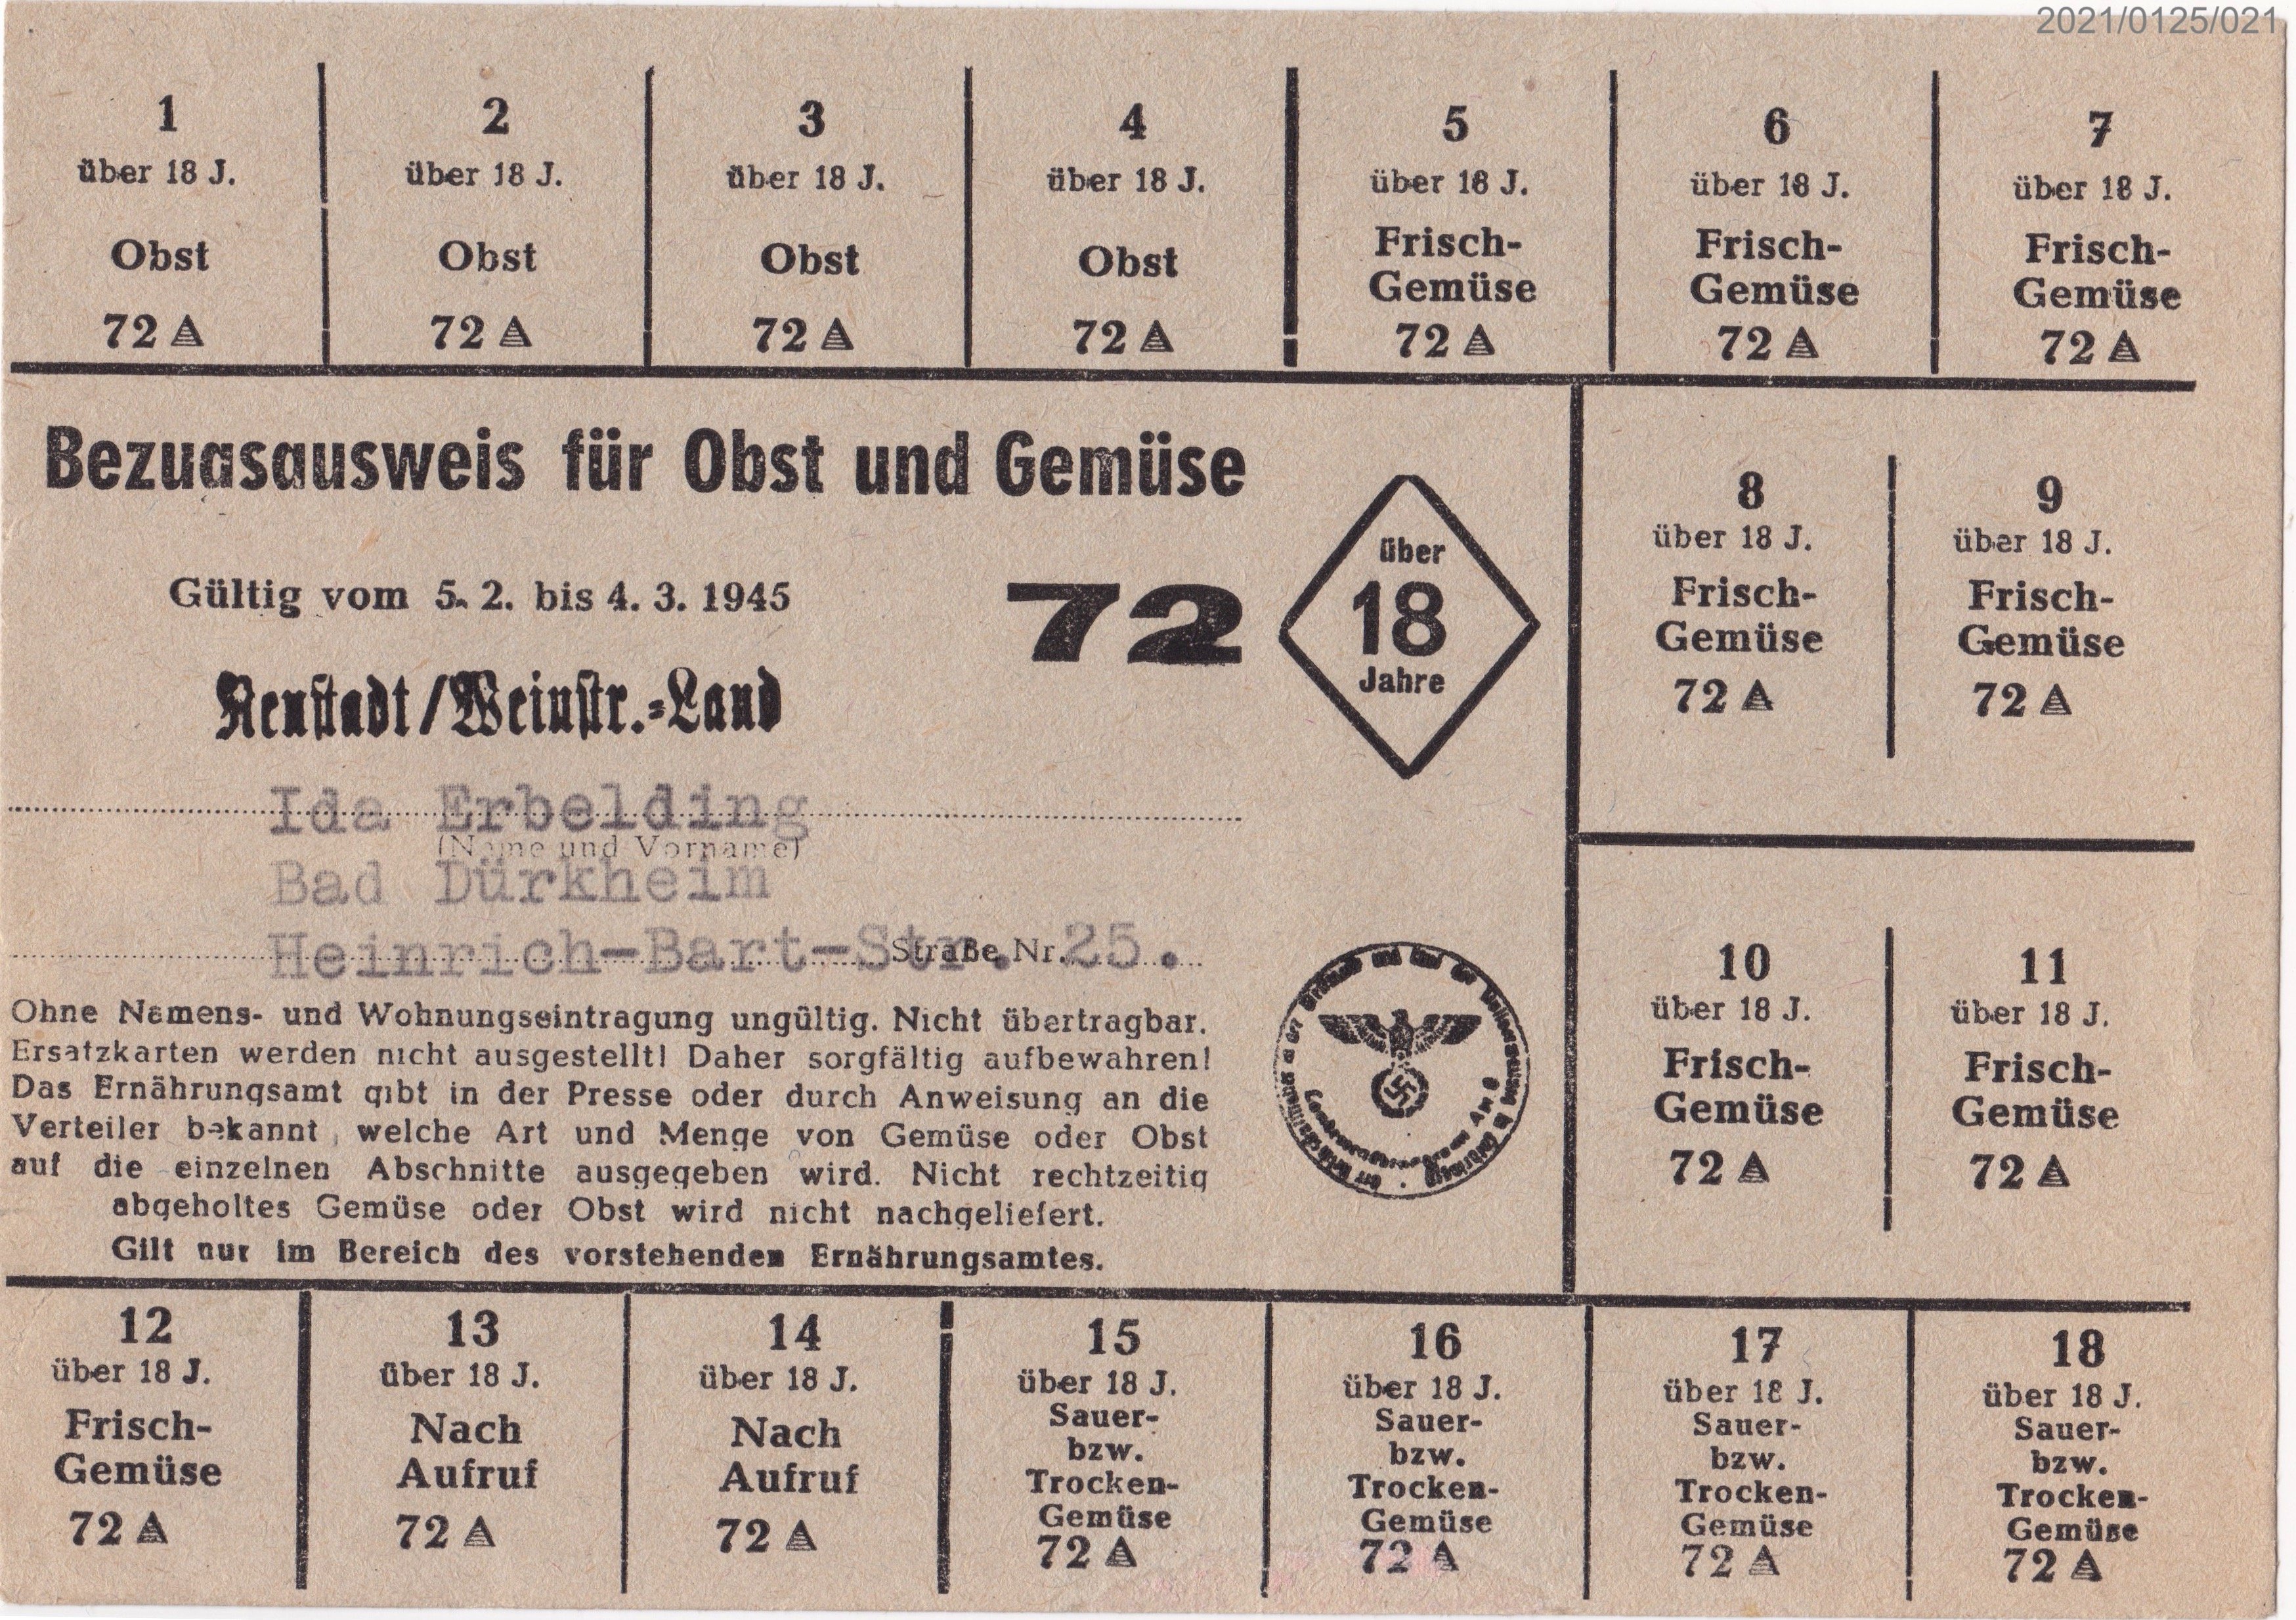 Bezugsausweis für Obst und Gemüse 5.2. - 4.3.1945 (Museumsgesellschaft Bad Dürkheim e. V. CC BY-NC-SA)